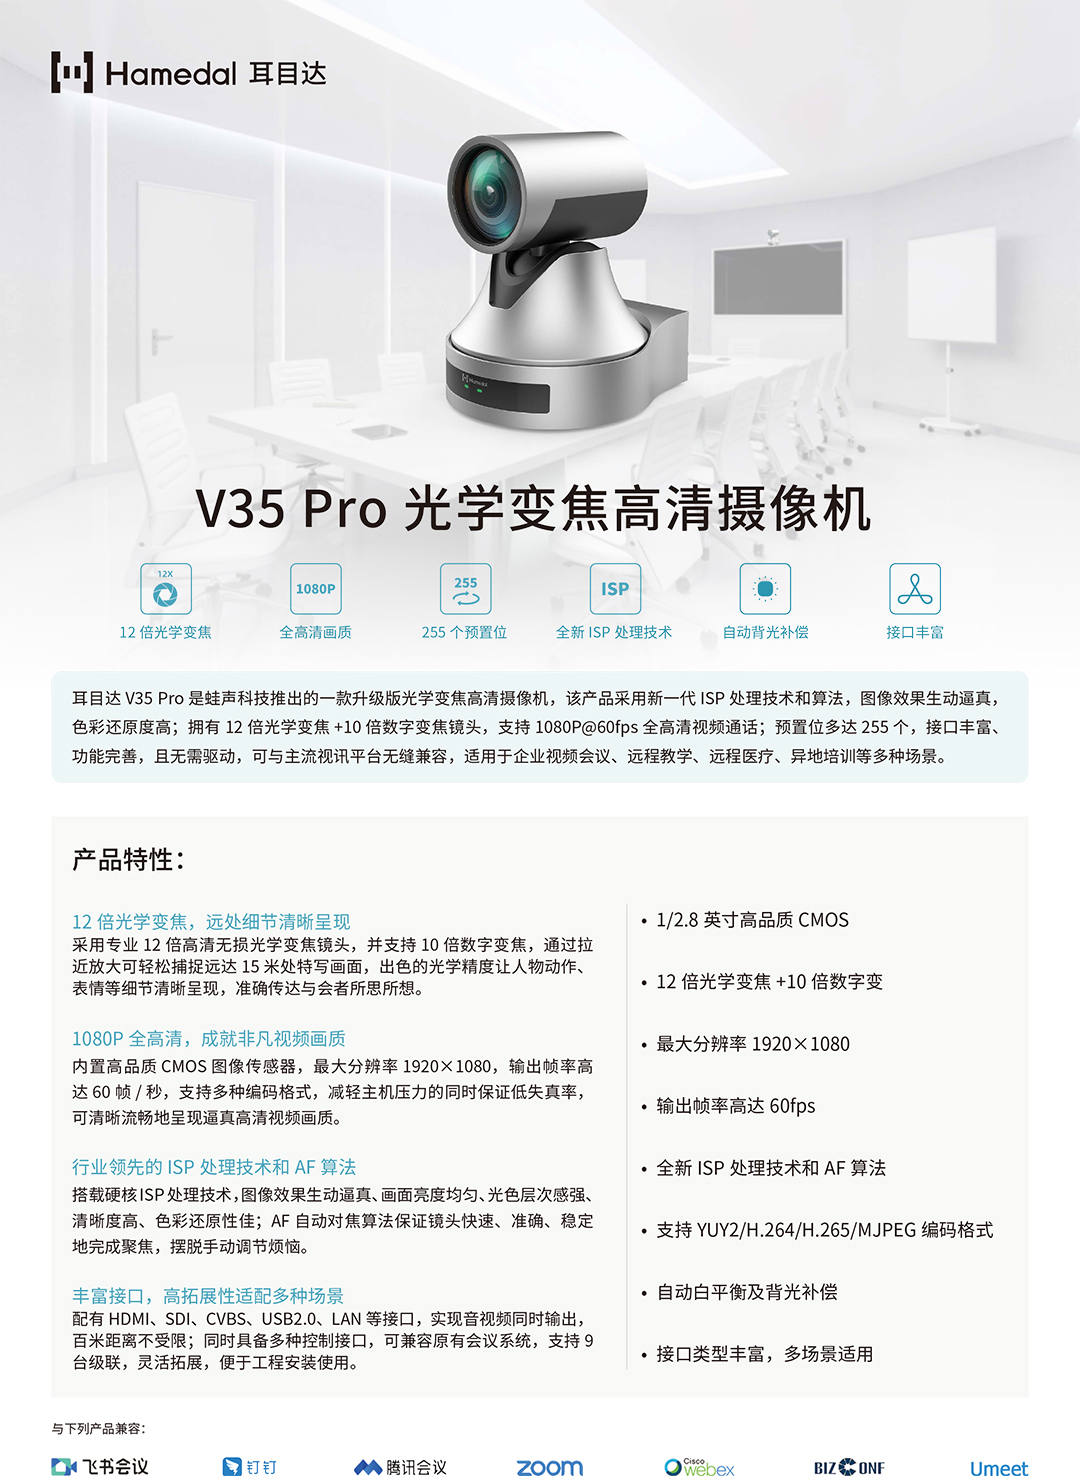 耳目达V35-Pro产品手册_v22.jpg